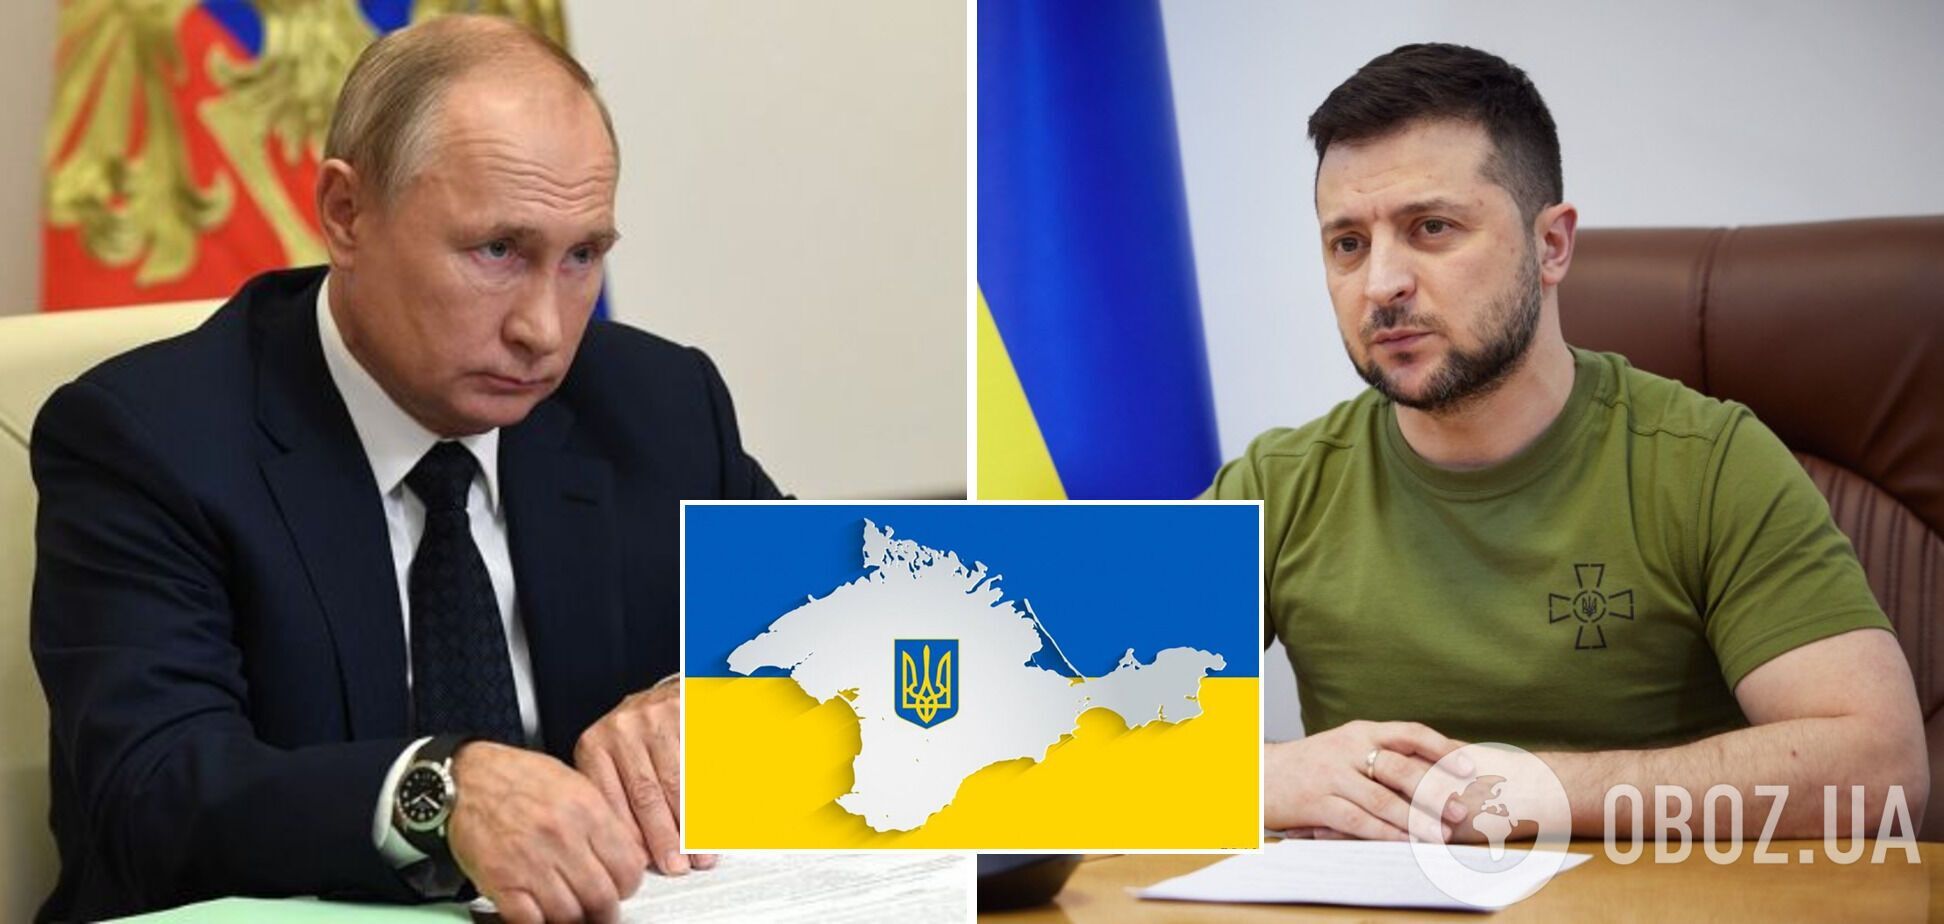 Возвращение Крыма Украине должно быть основой соглашения между Киевом и Москвой